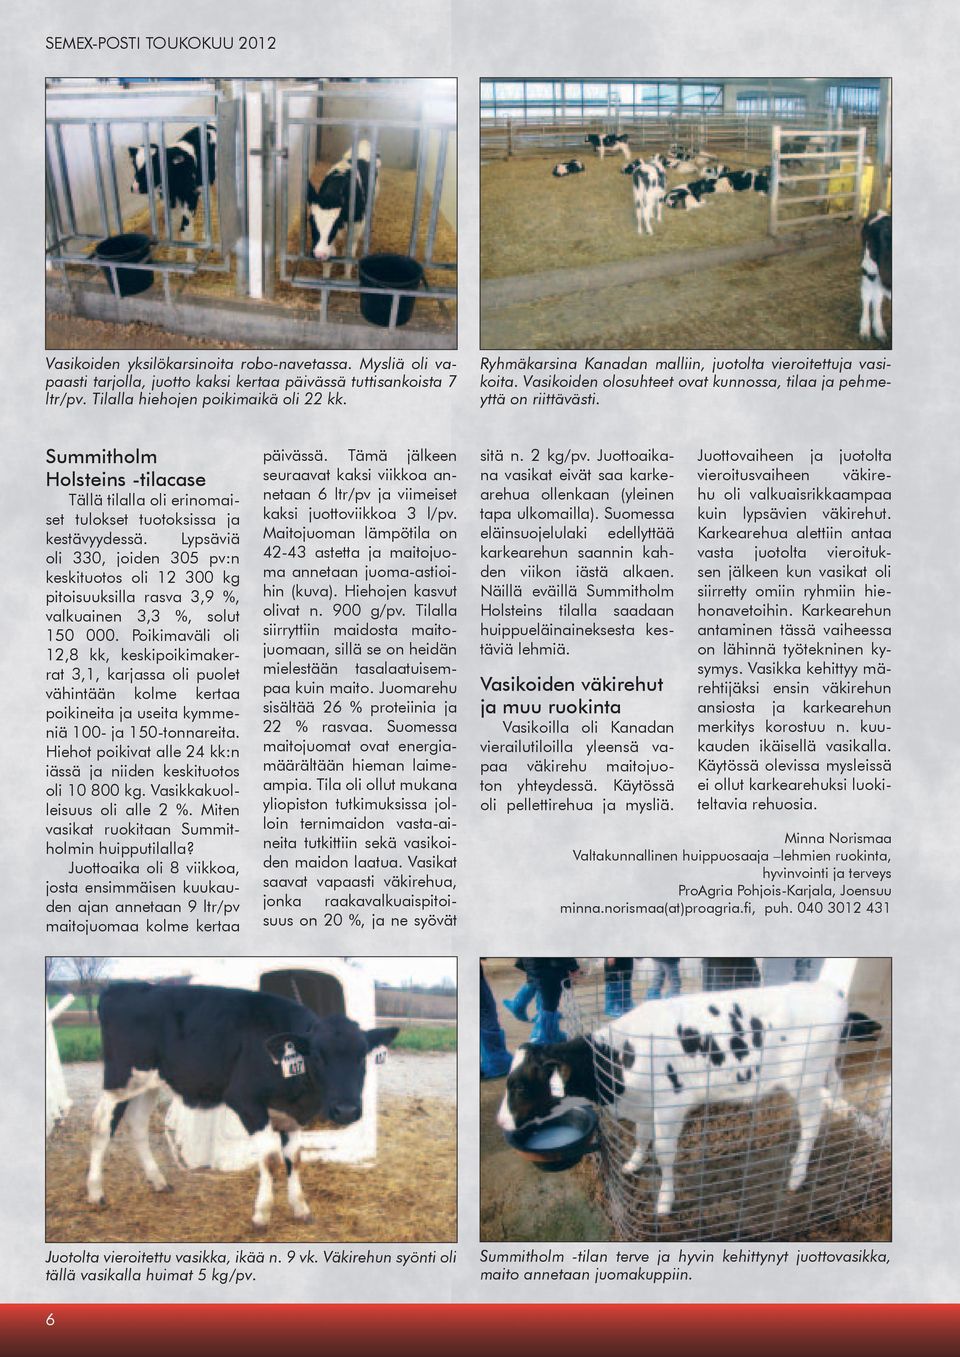 Summitholm Holsteins -tilacase Tällä tilalla oli erinomaiset tulokset tuotoksissa ja kestävyydessä.